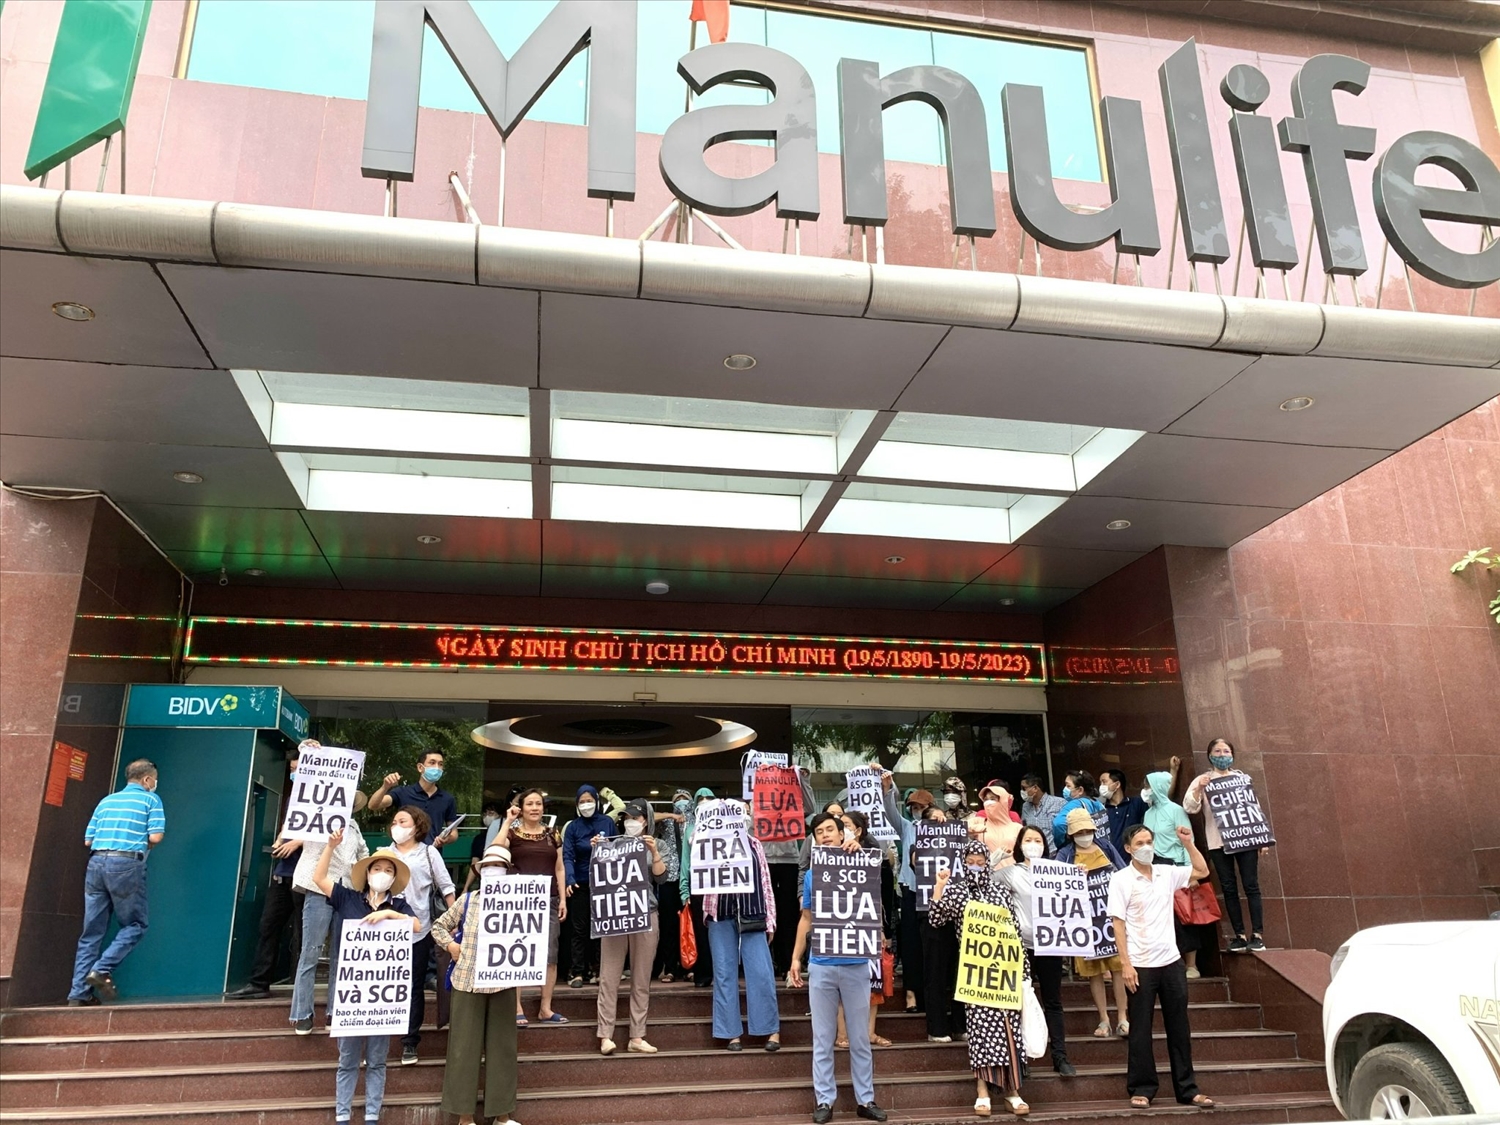 Hình ảnh đoàn người đến khiếu nại tại văn phòng của Manulife tại Hà Nội